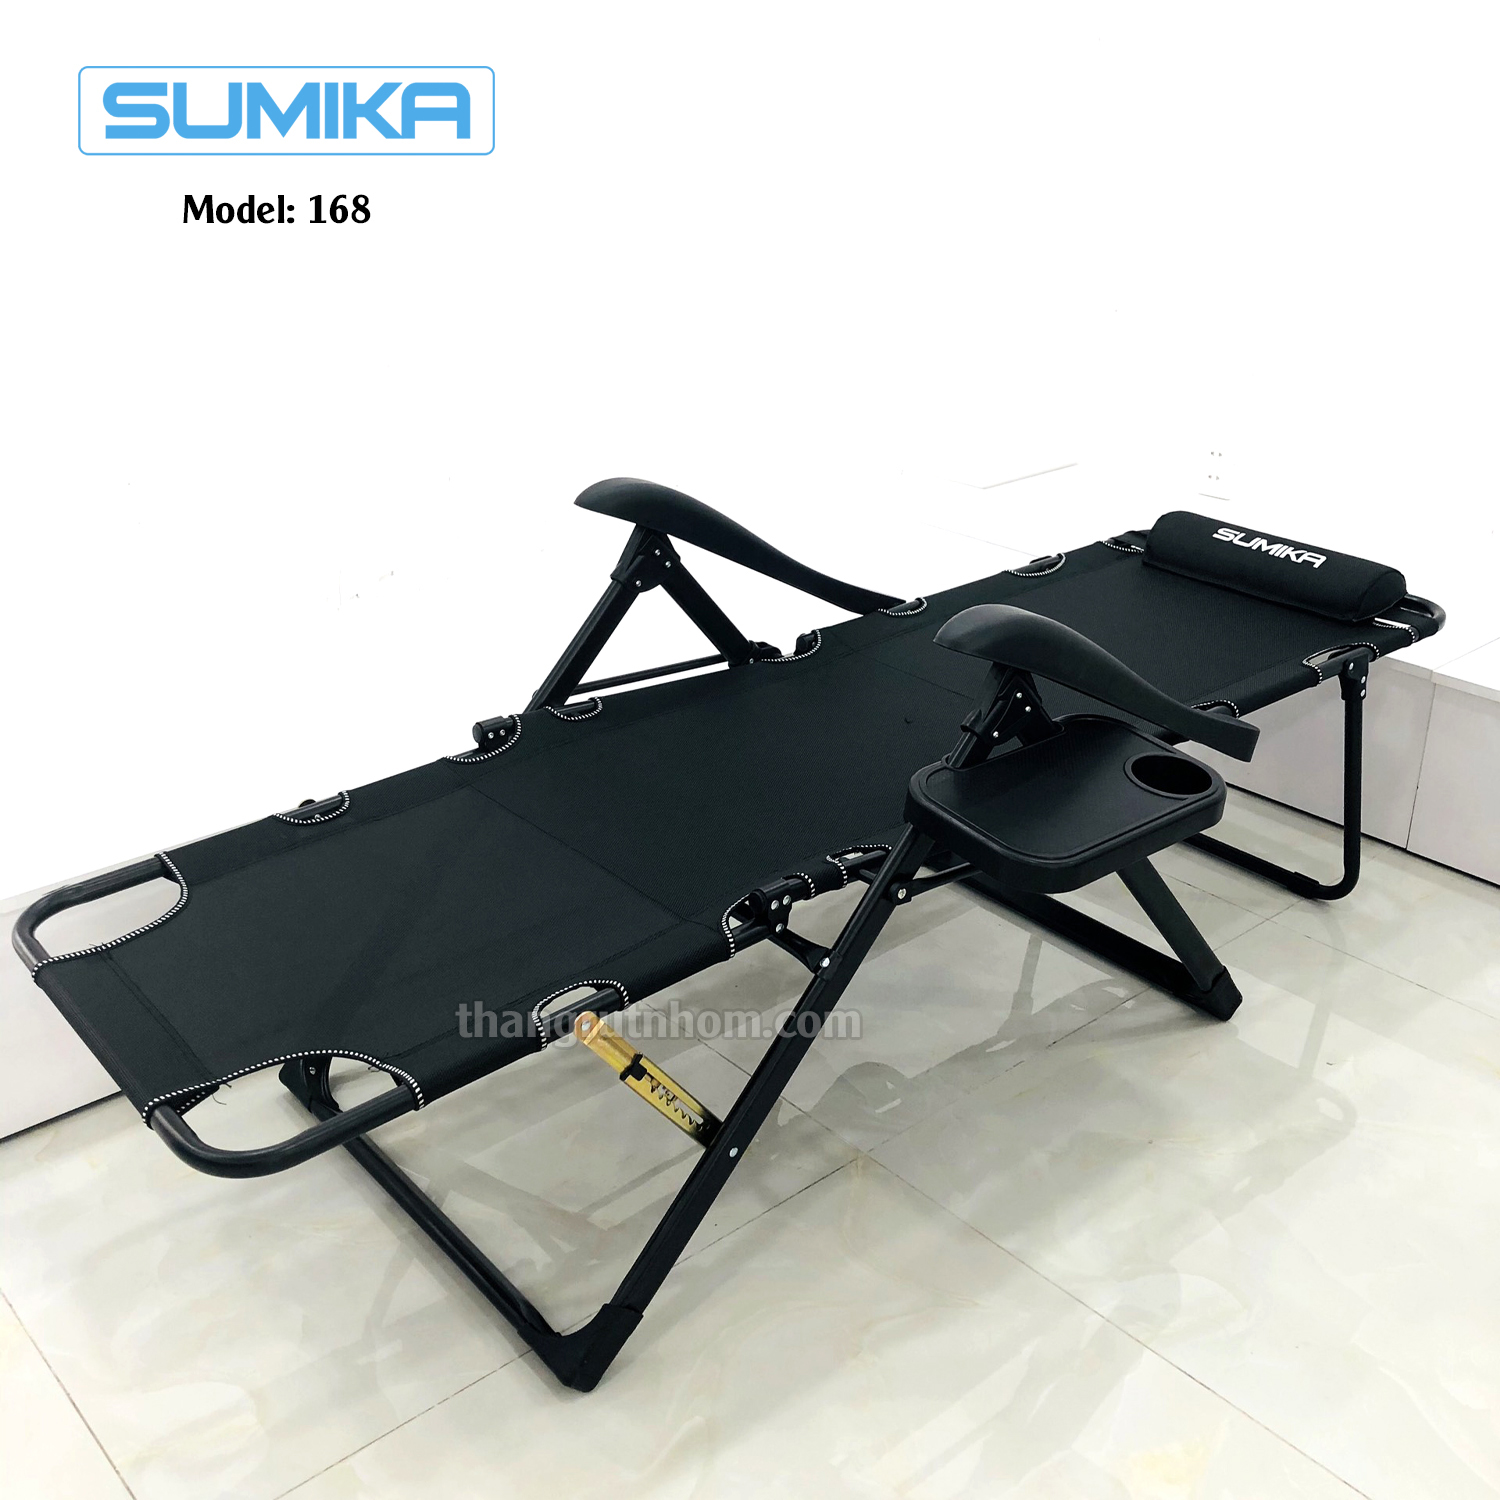 Ghế xếp thư giãn cao cấp SUMIKA 168 - Có thể ngã thành giường nằm, vải lưới Textilene thoáng khí, gối có thể tháo rời, tải trọng 300kg, khung ghế bằng thép không gỉ, đế chống trượt